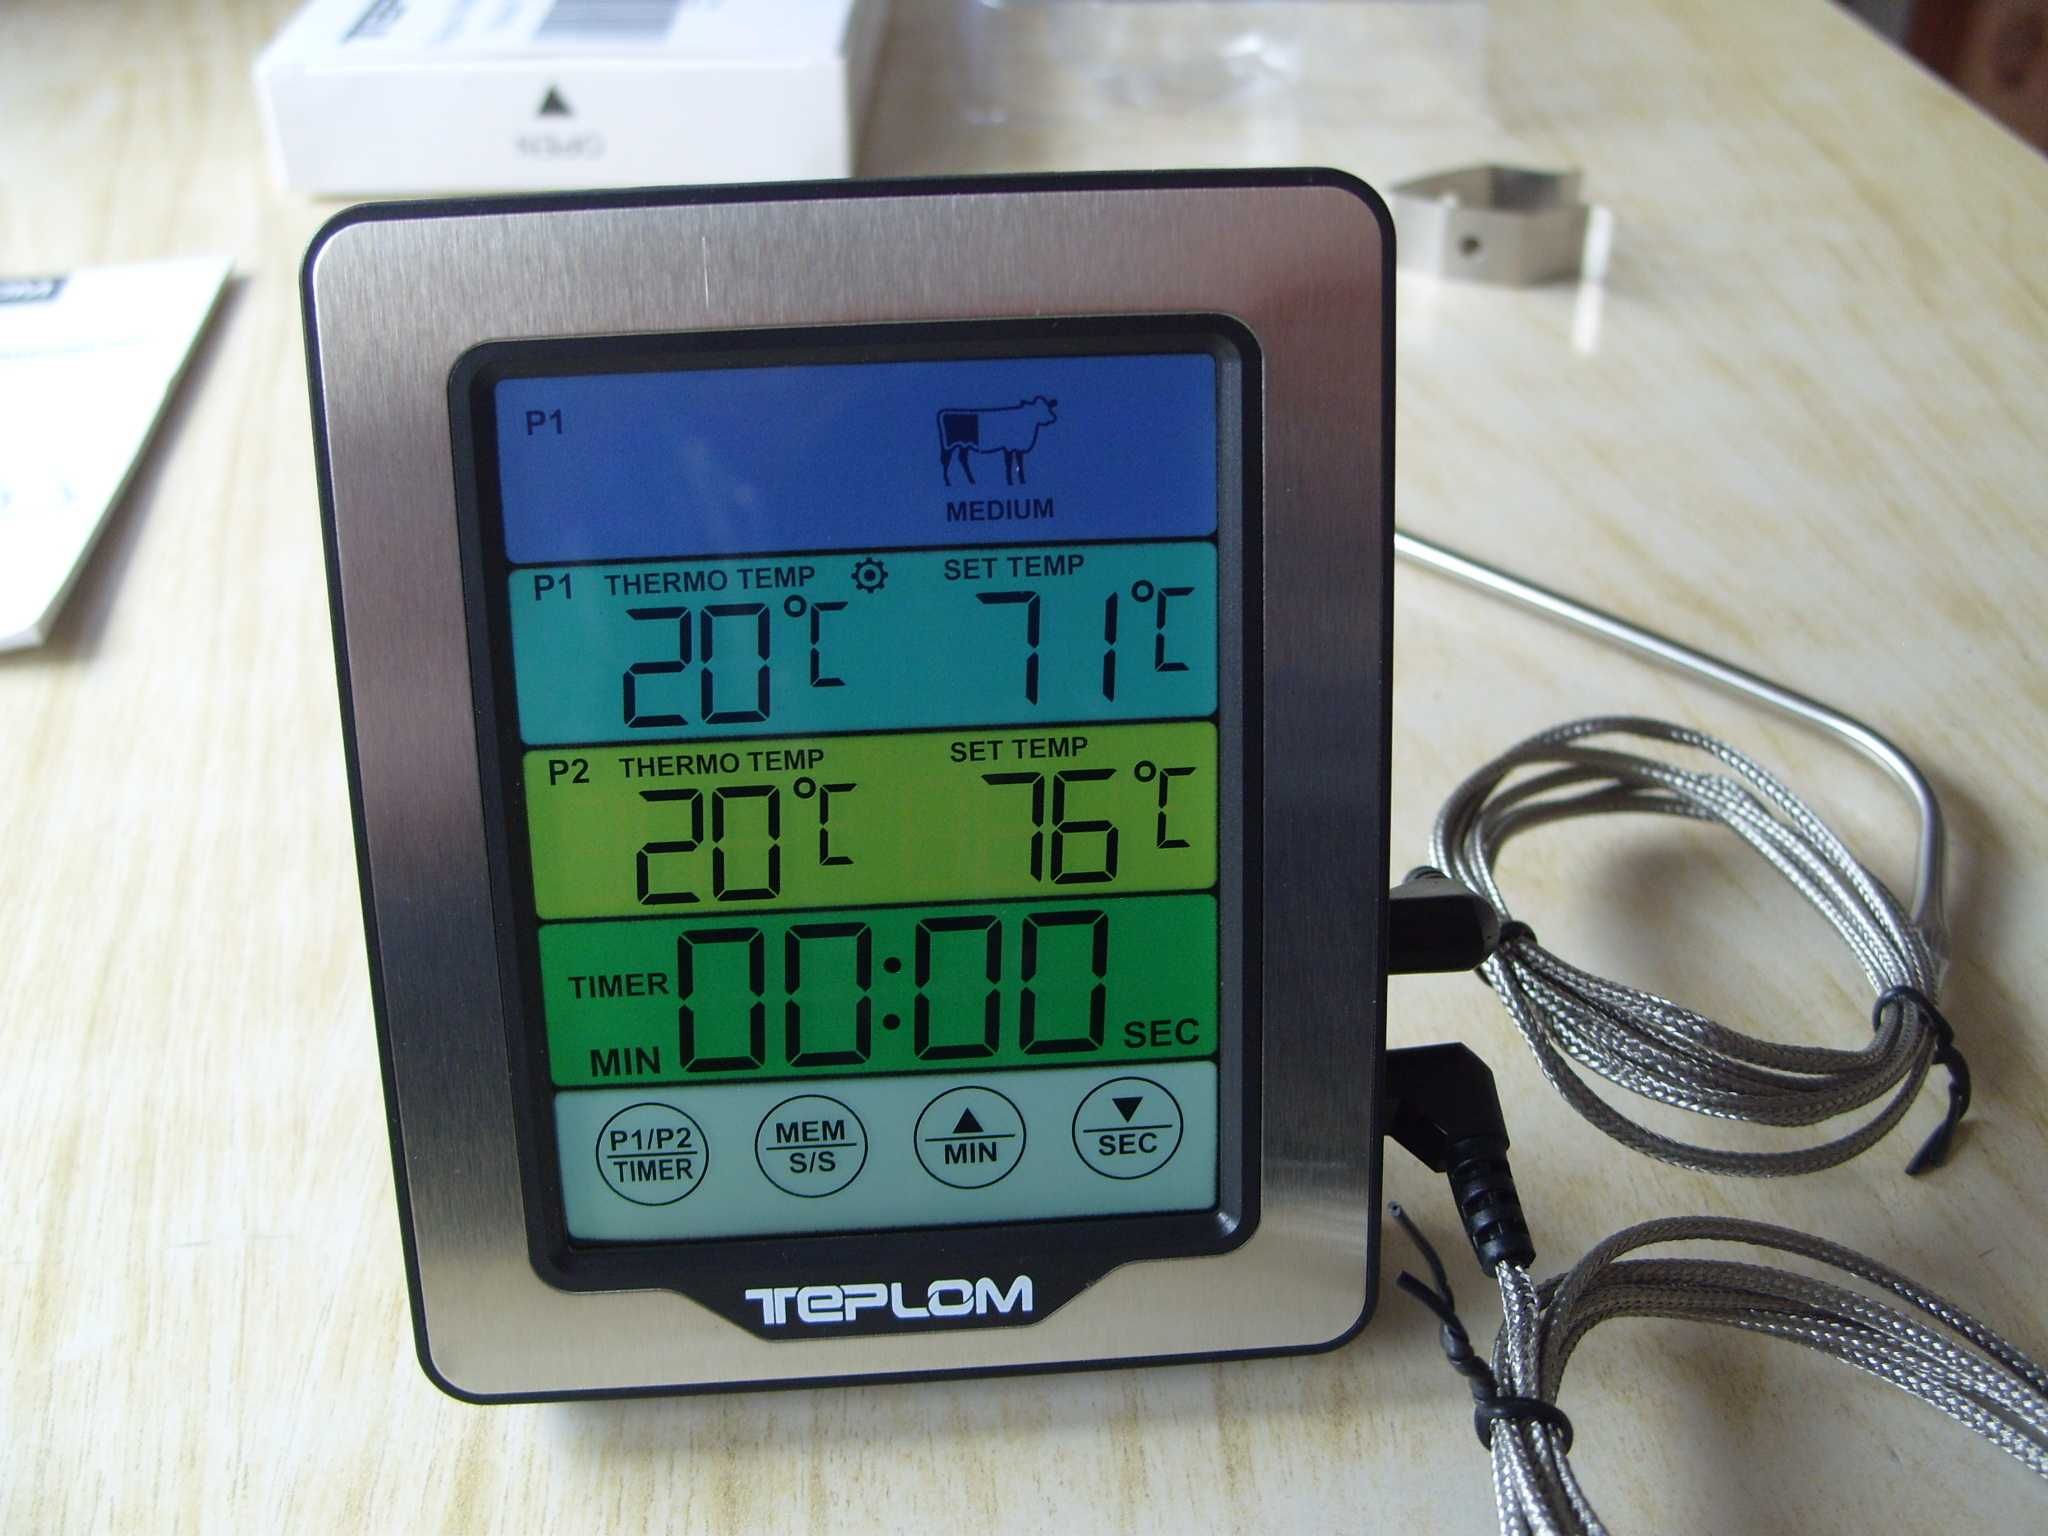 Готварски термометър TM-2379, с таймер и 2 сонди. Българско упътване